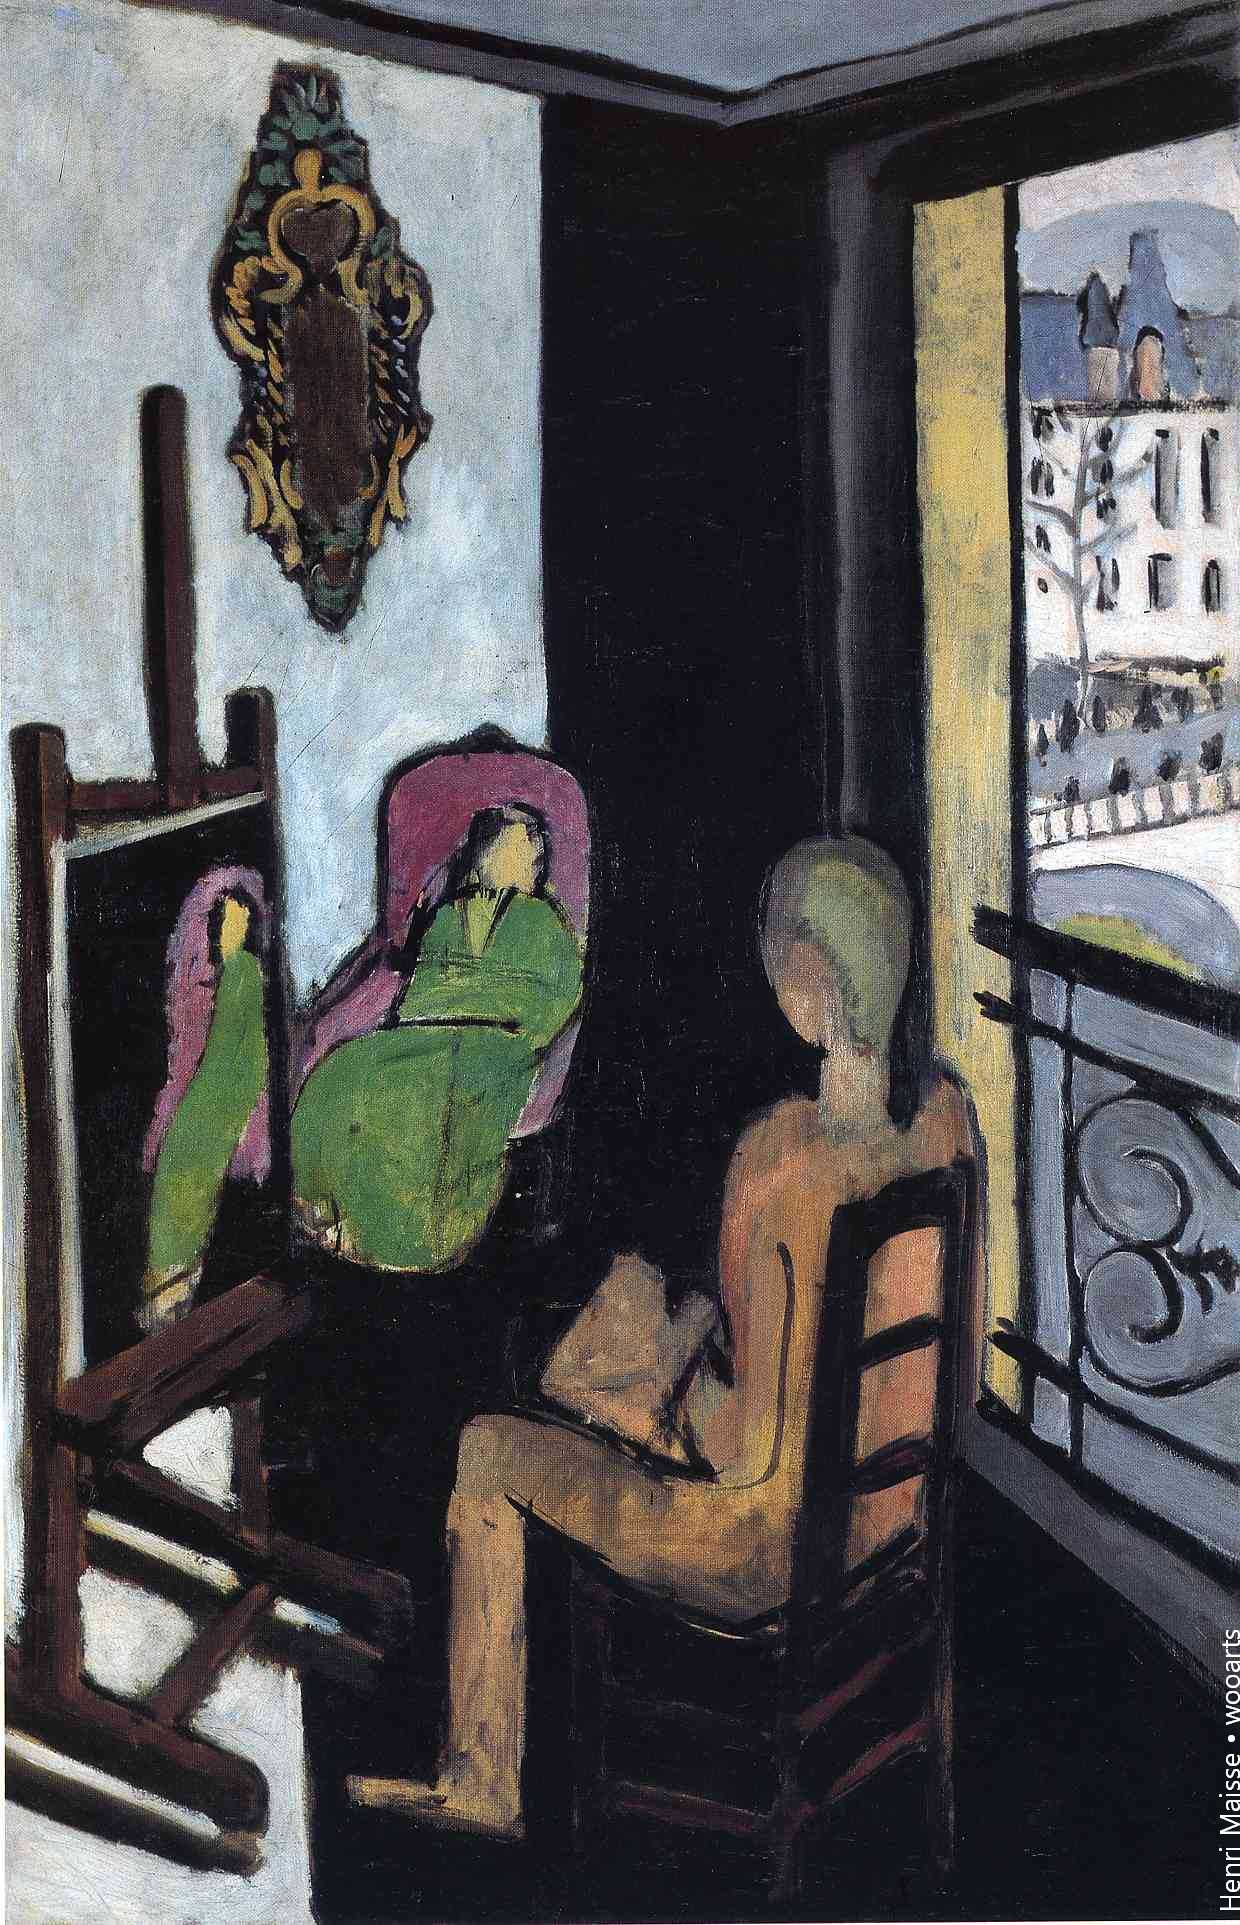 Henri Matisse Setting Painting , 1916-17, Le Peintre dans son atelier (The Painter and His Model), oil on canvas, 146.5 x 97 cm, Musée National d'Art Moderne, Centre Georges Pompidou, Paris